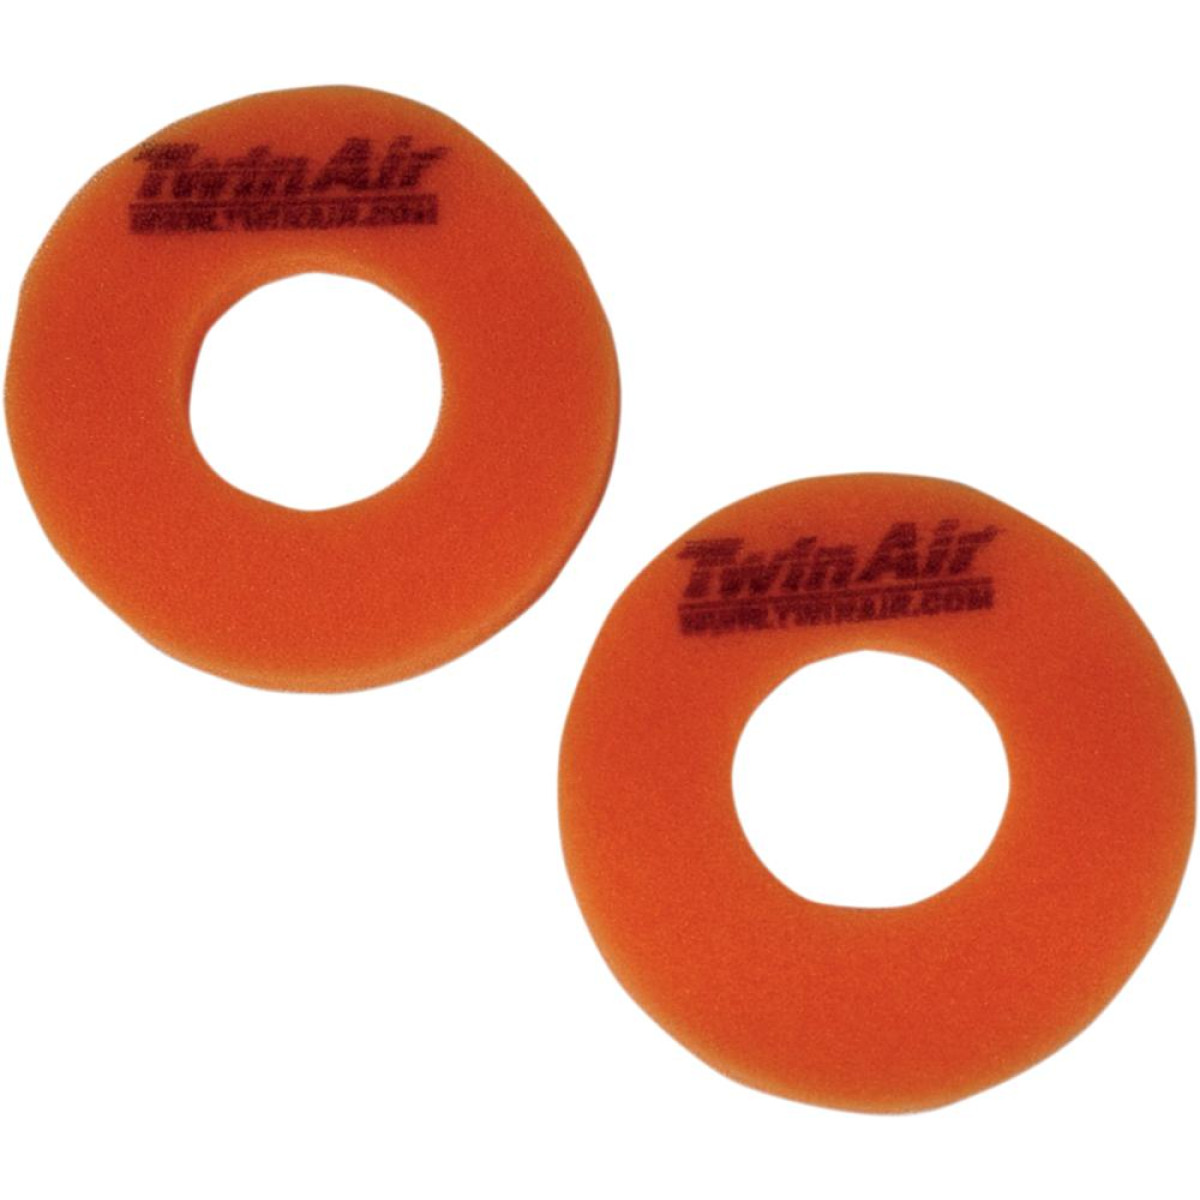 Twin Air Protezione Manopole Donuts  Arancione